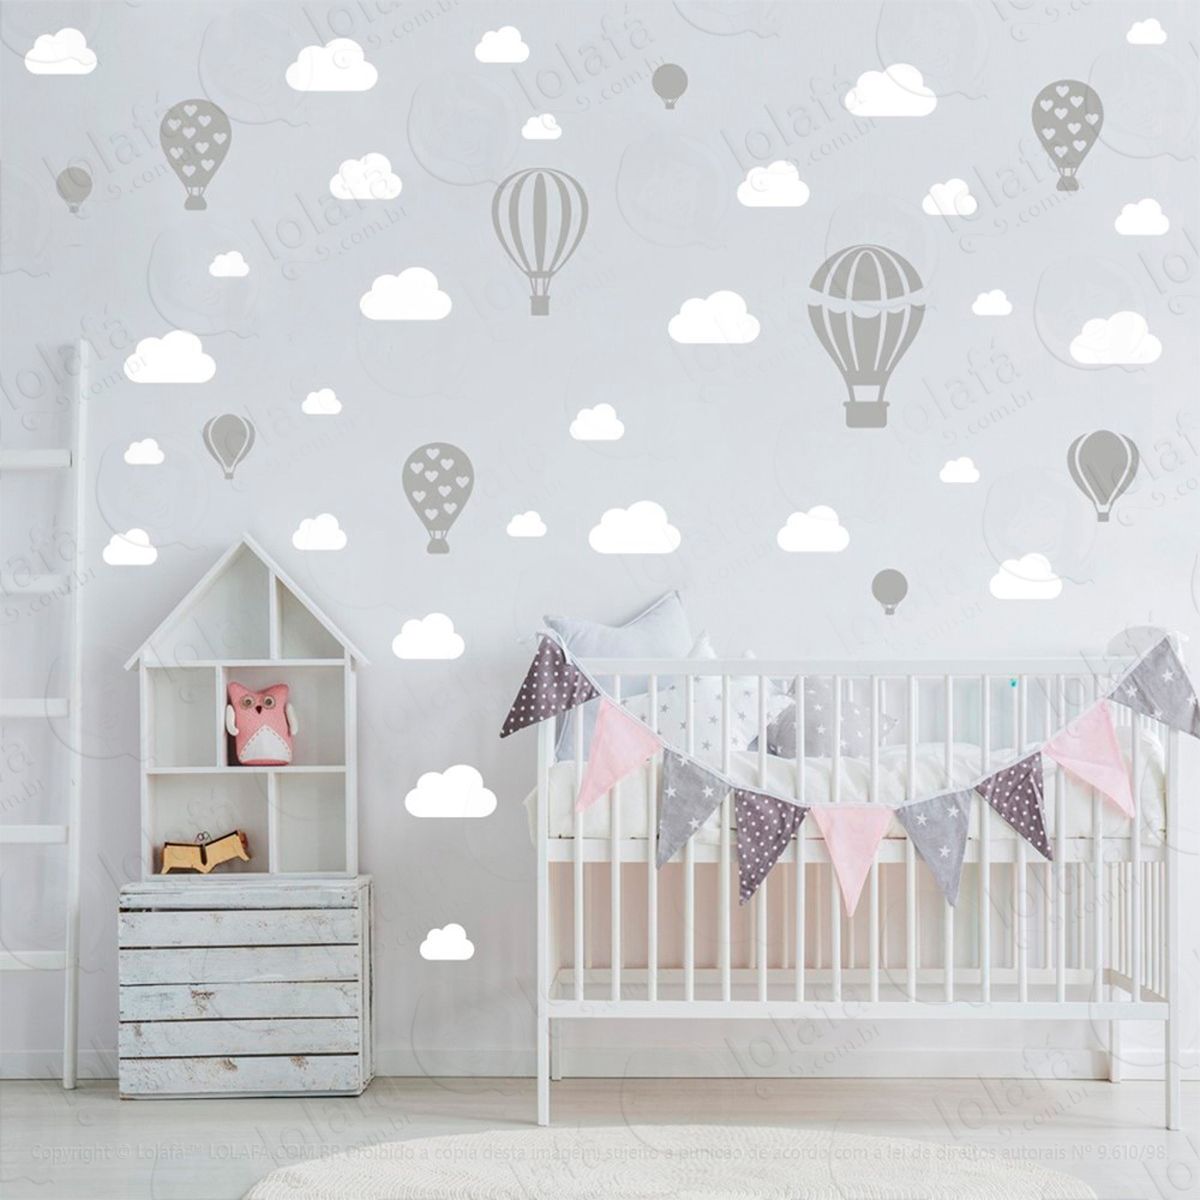 adesivos balões e nuvens 42 peças adesivos para quarto de bebê infantil - mod:947